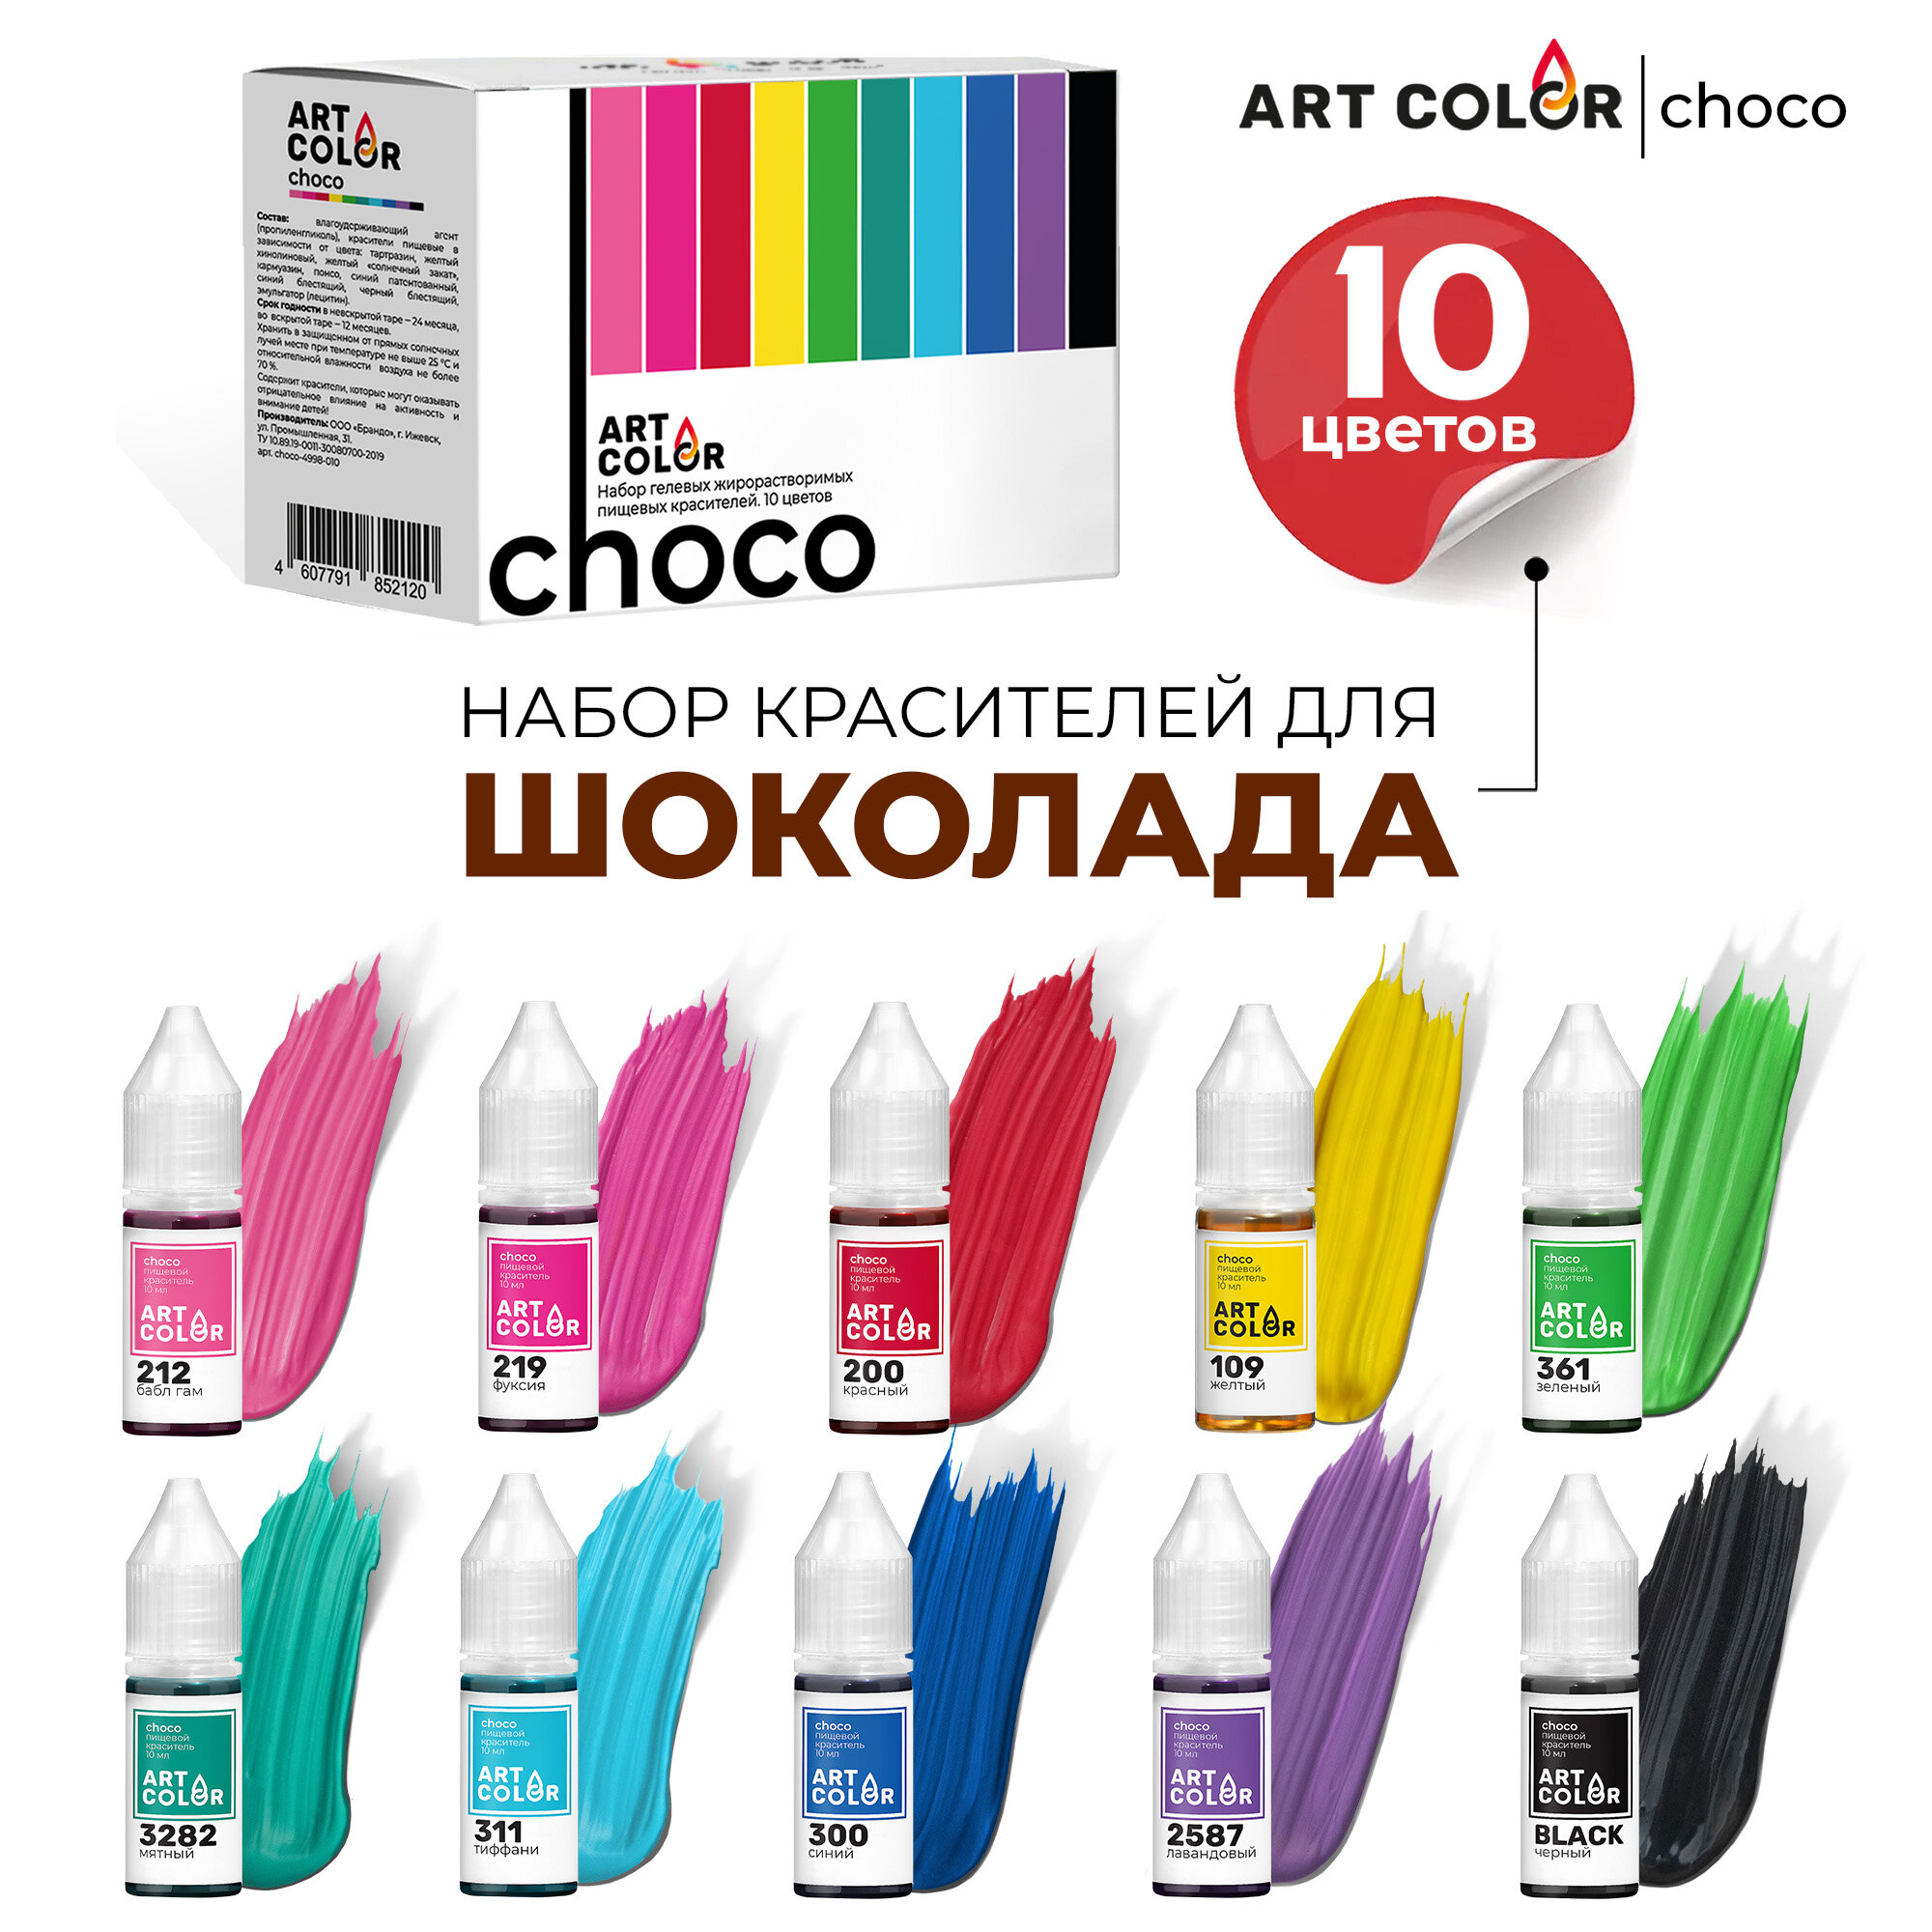 Набор пищевых гелевых жирорастворимых красителей ART COLOR Choco, 10 цветов